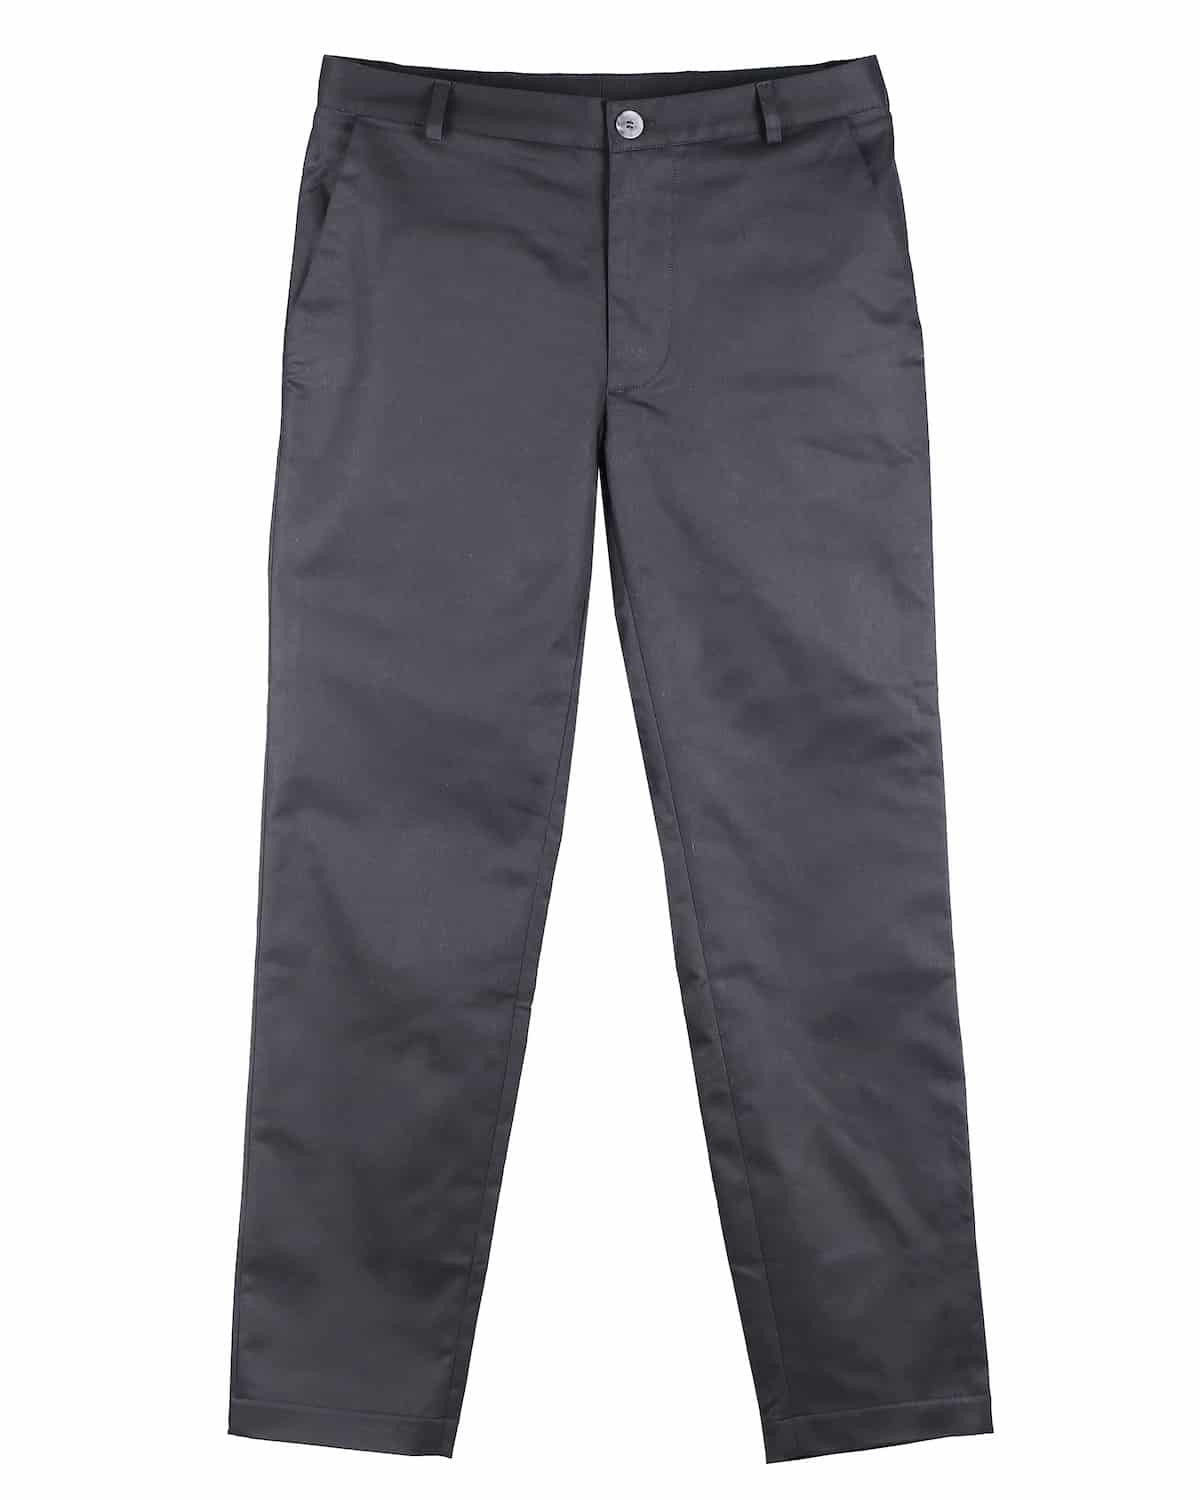 liam-pants-for-men-organic-cotton-black